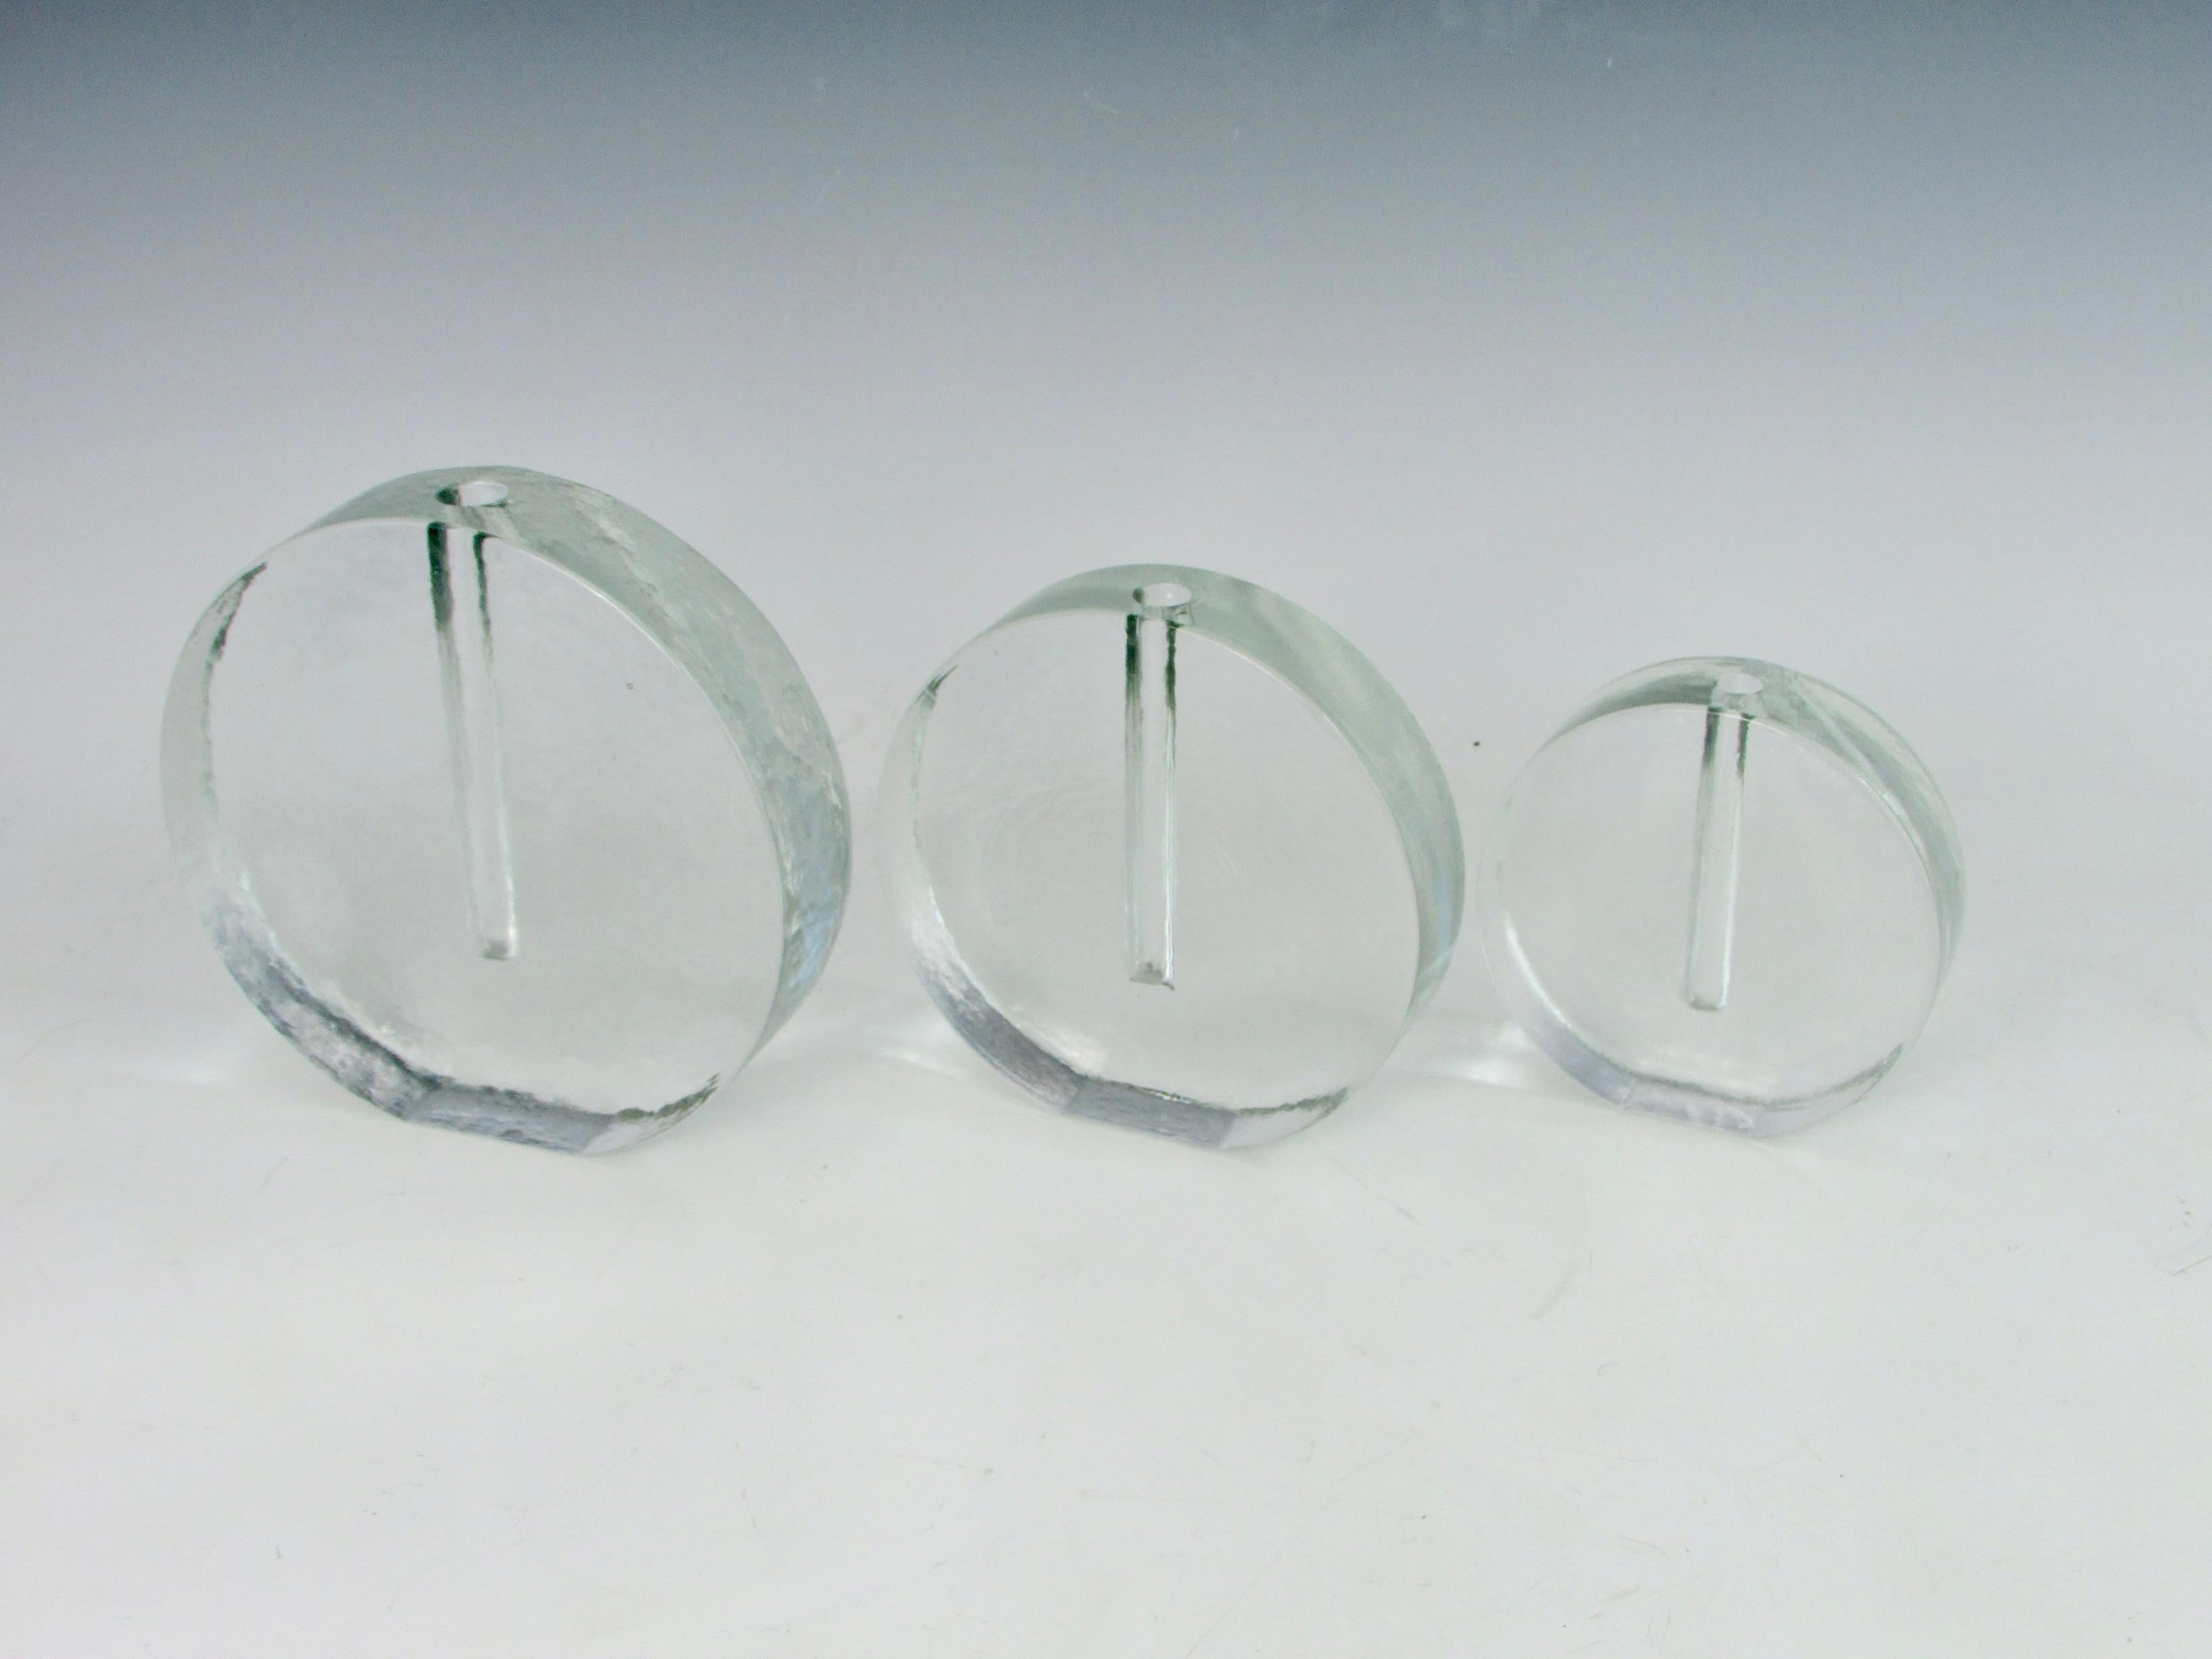 Ensemble de trois vases circulaires en verre de hauteur graduée. Verre coulé massif en texture givrée Ice. Attribué à Tapio Wirkkala pour Littala de Finlande. Mesures : La plus petite mesure 5